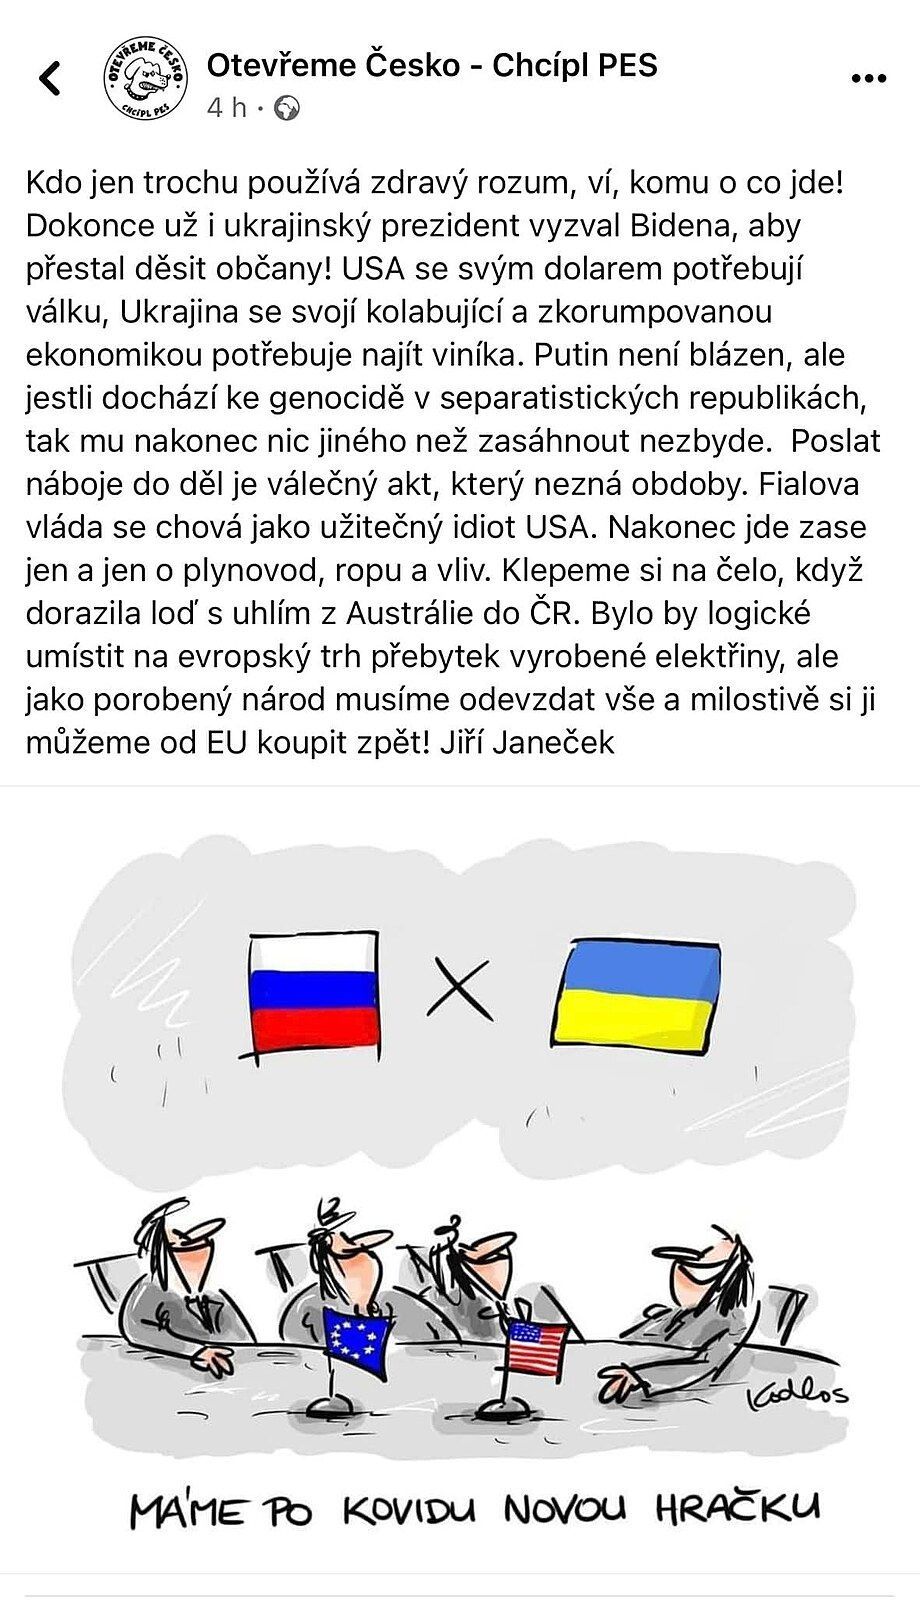 Janeček zveřejnil na Facebooku za Chcípl pes svůj příspěvek, v němž podával události v souladu s Ruskou propagandou.